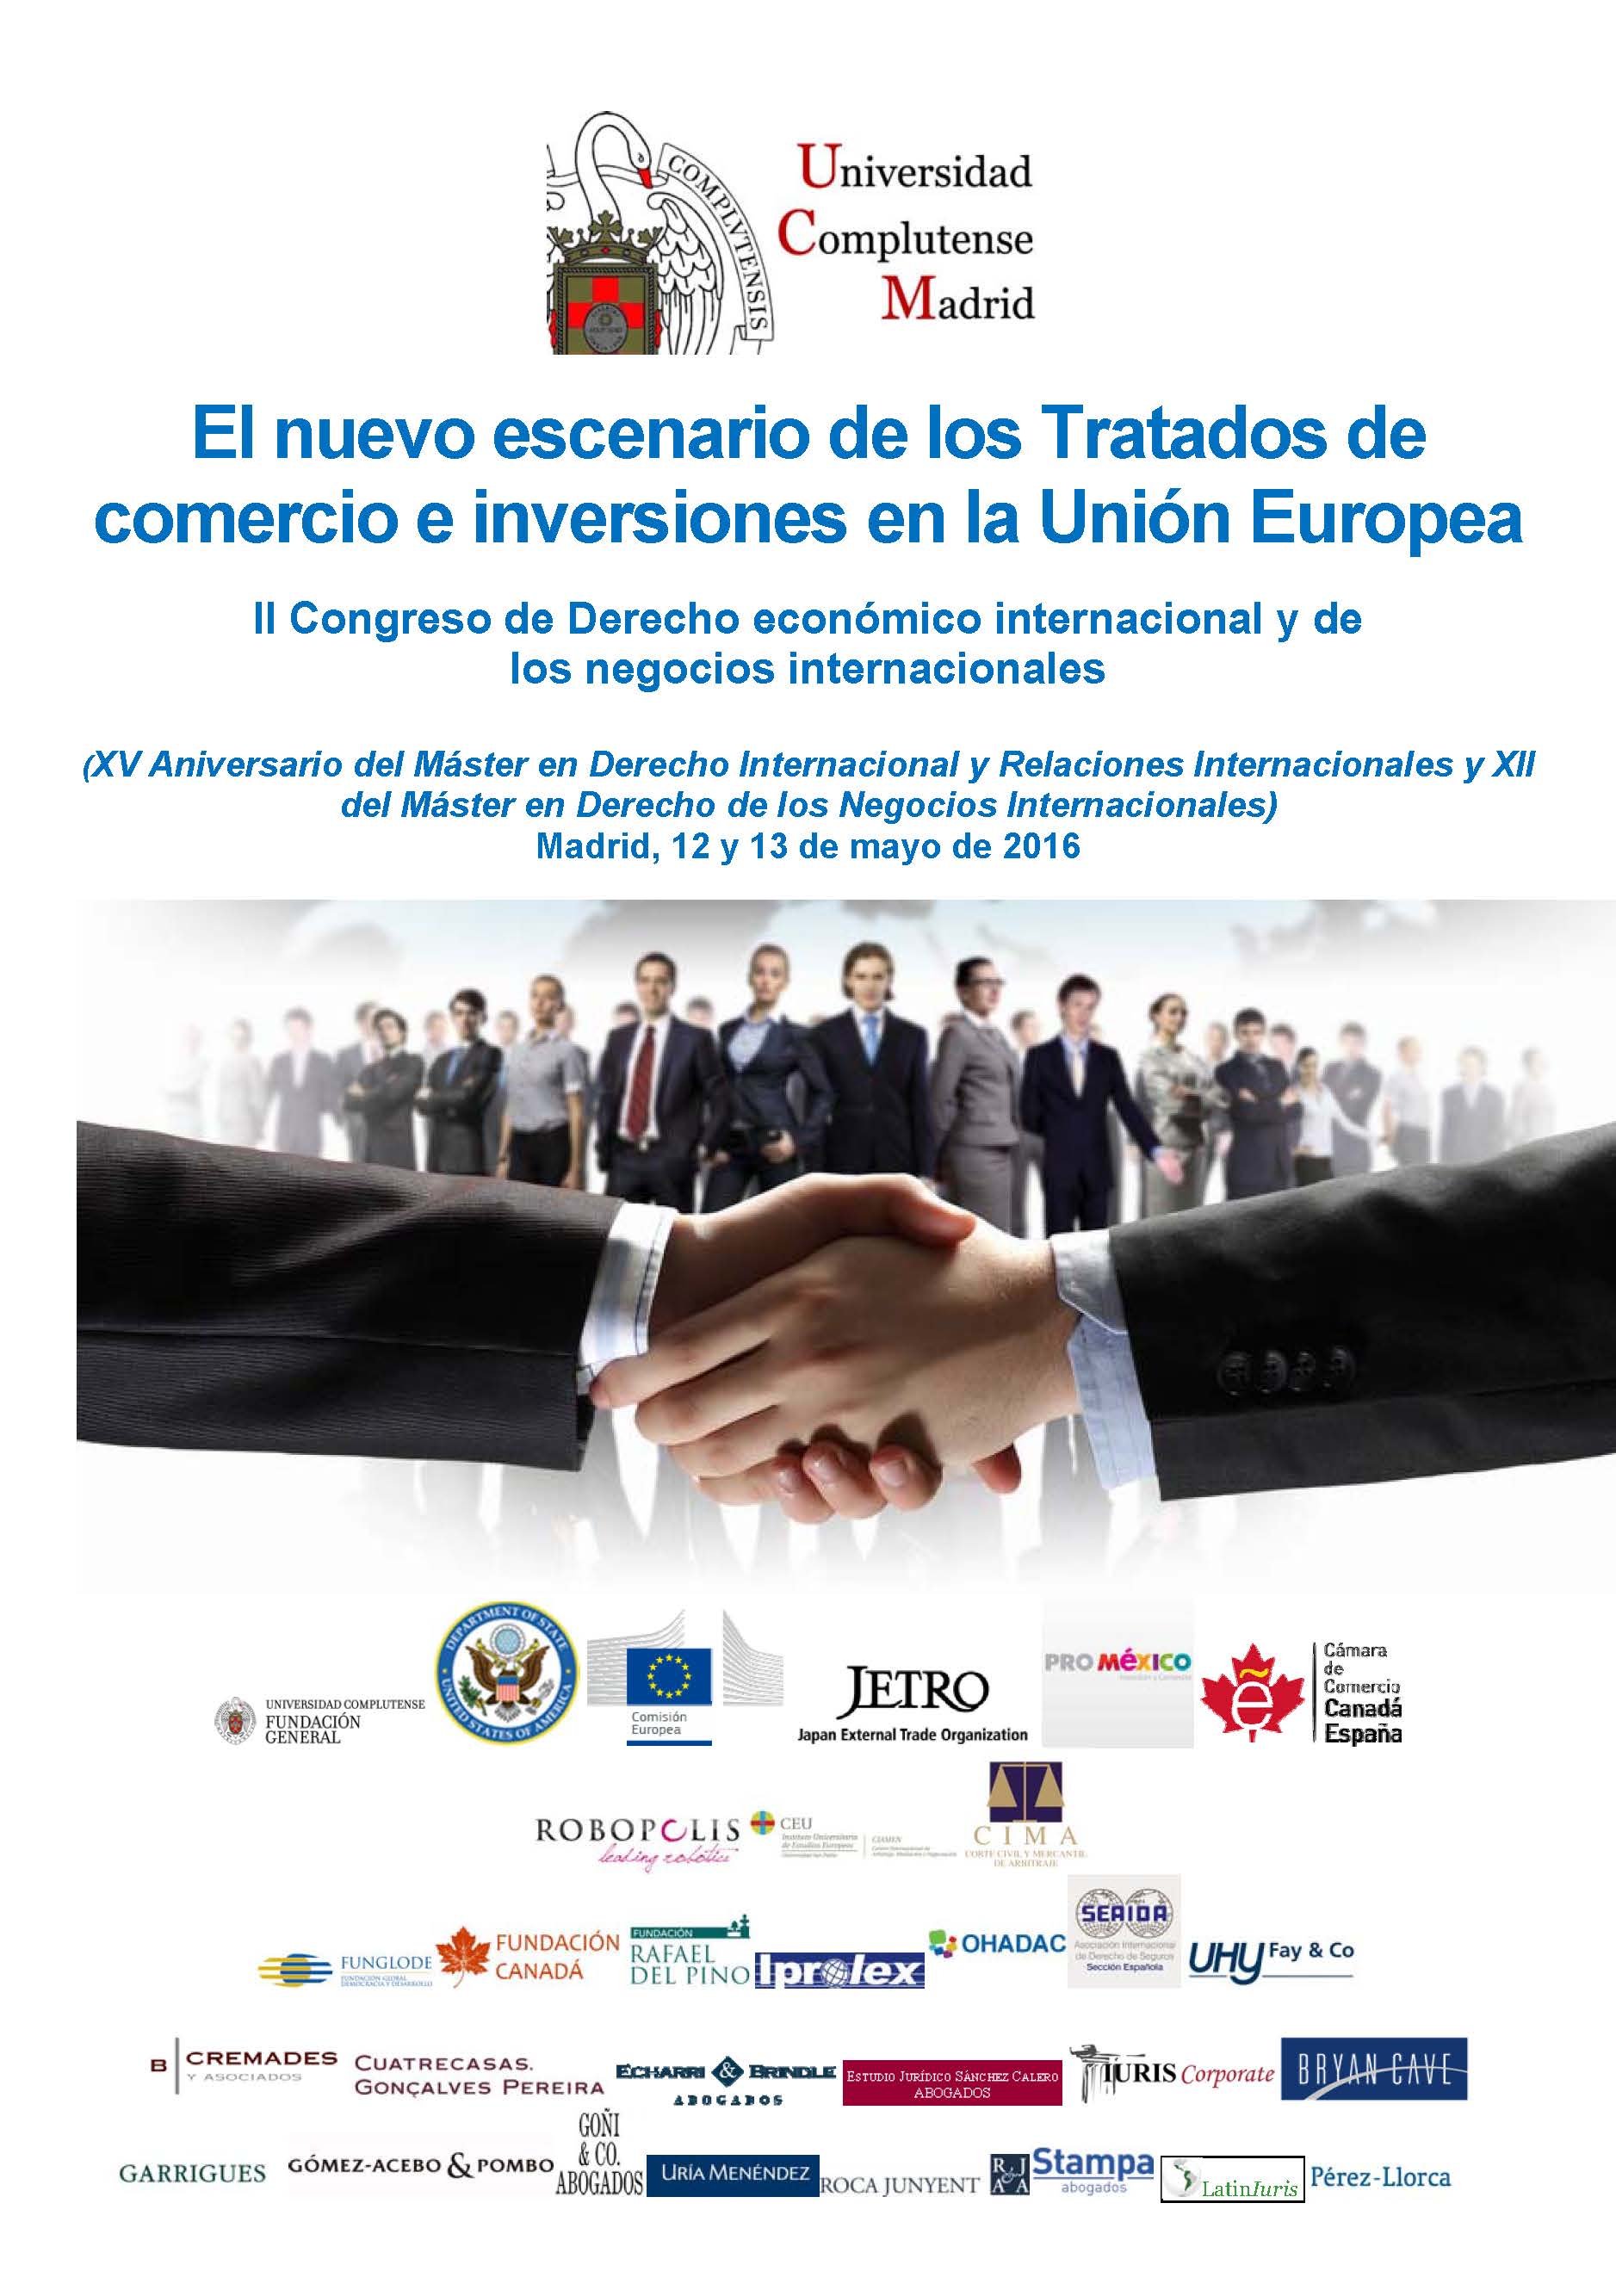 II Congreso de Derecho económico internacional y de los negocios internacionales